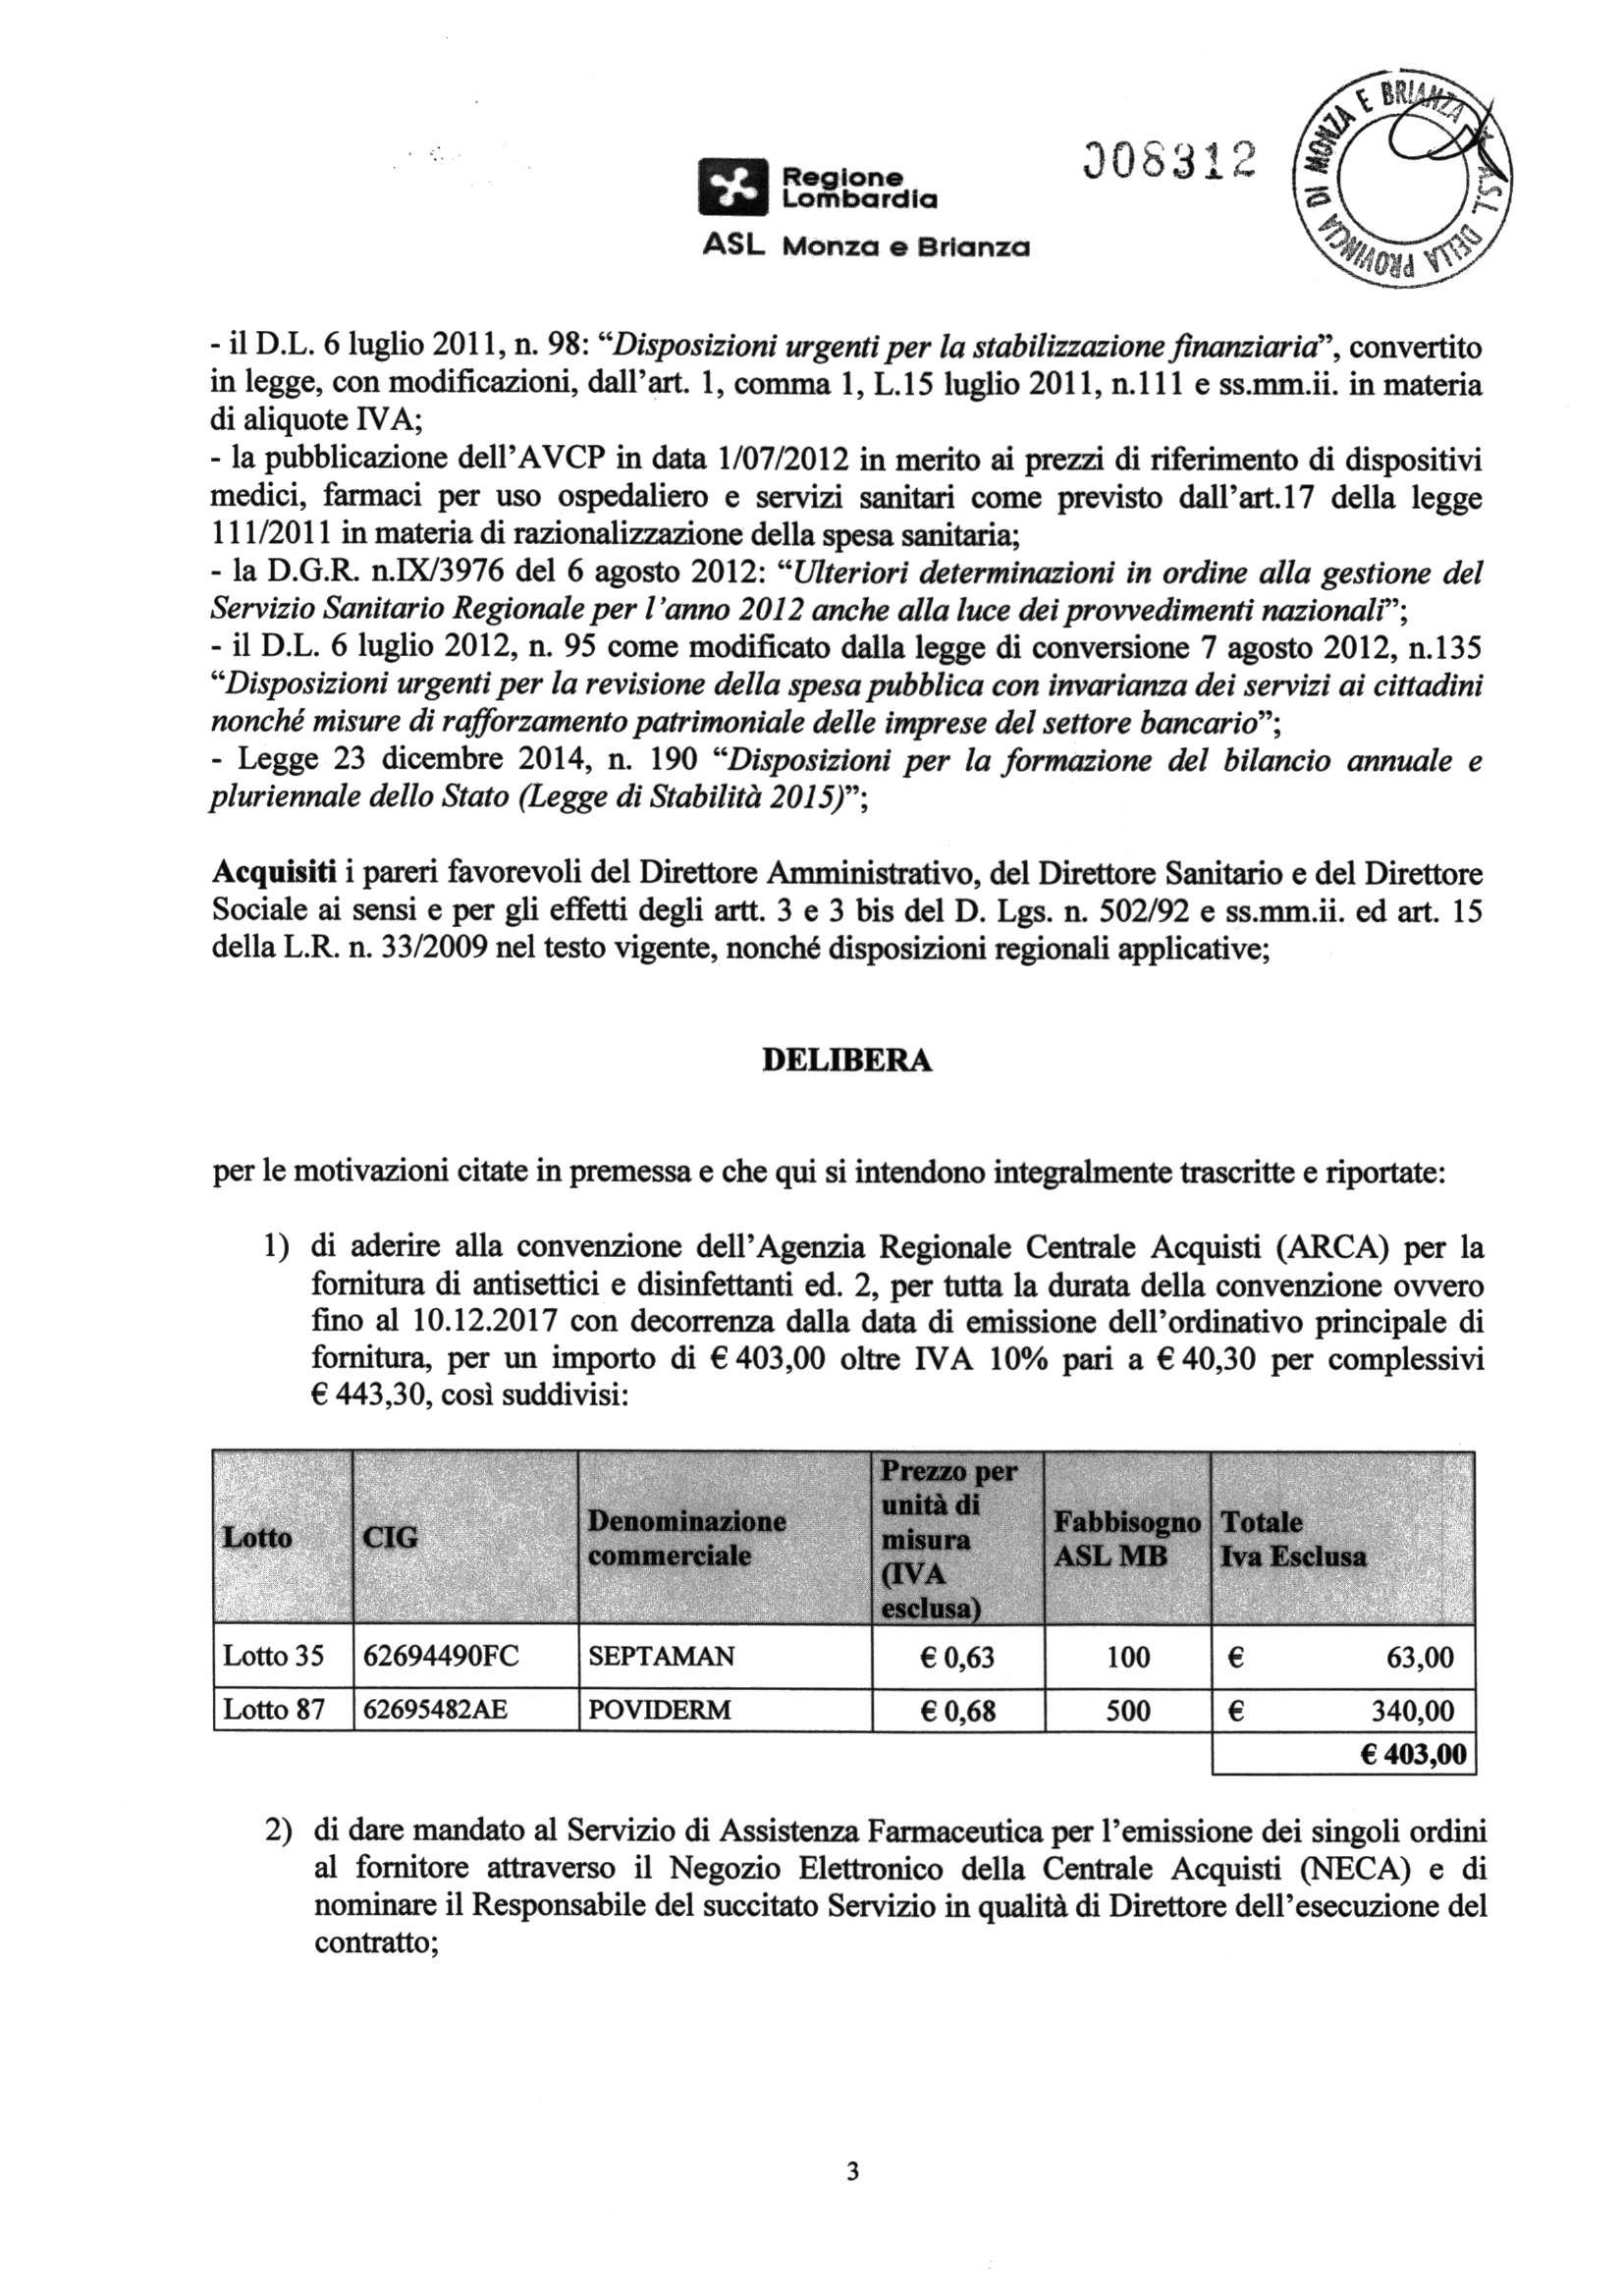 ASL Monza e Brlanza - il D.L. 6 luglio 2011, n. 98: "Disposizioni urgenti per la stabilizzazione finanziaria", convertito in legge, con modificazioni, dall'art. 1, comma 1, L.15 luglio 2011, n.